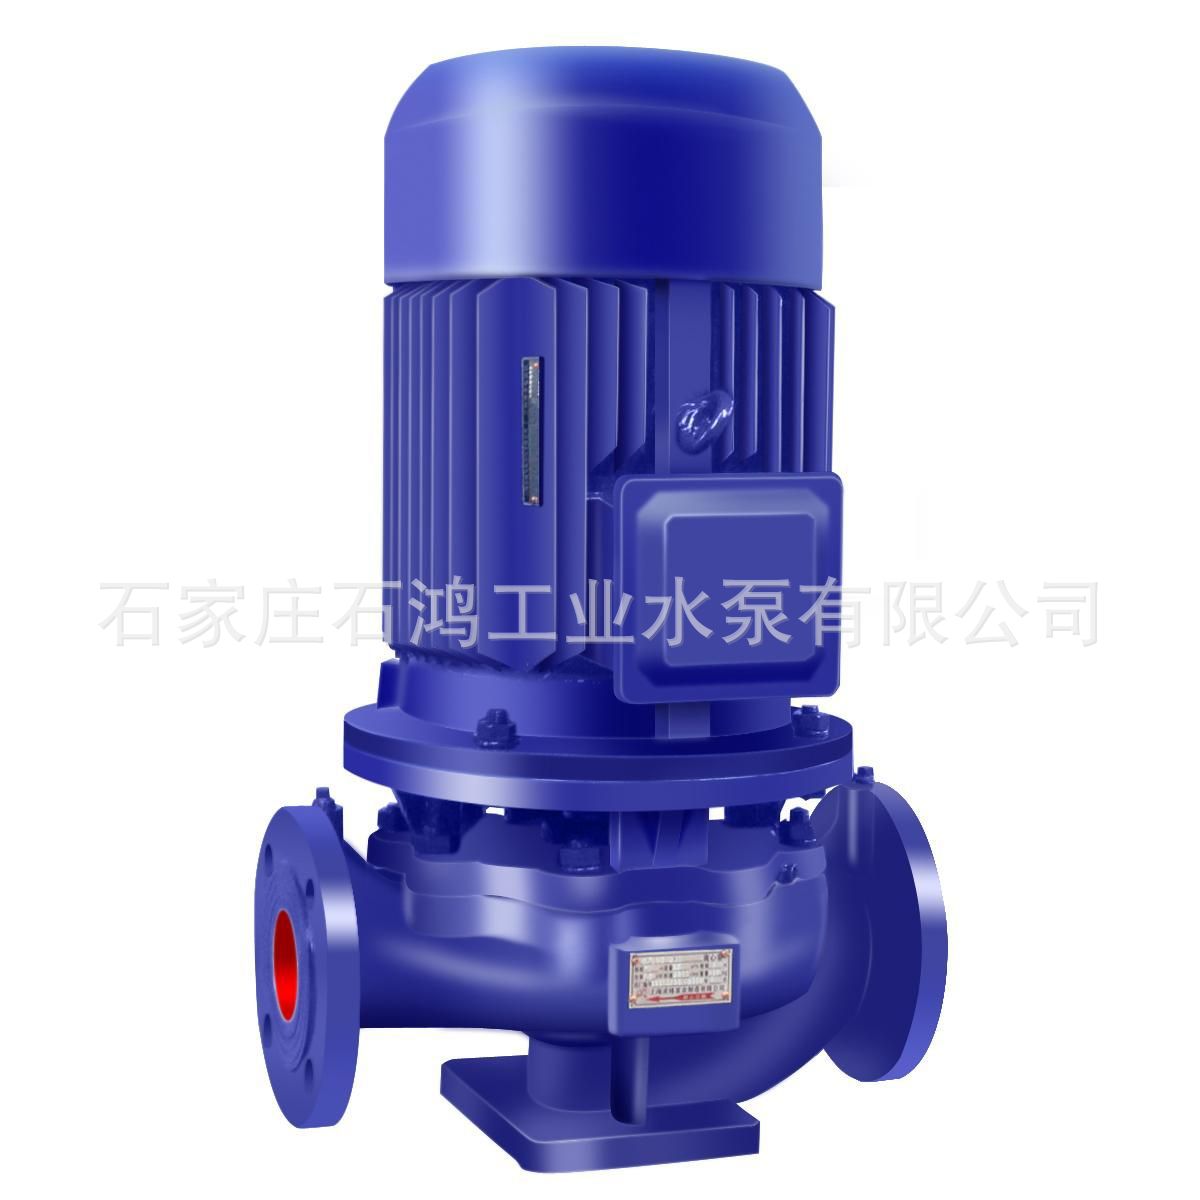 厂家销售 增压泵 管道增压水泵 管道离心泵 高效率 品质好的水泵